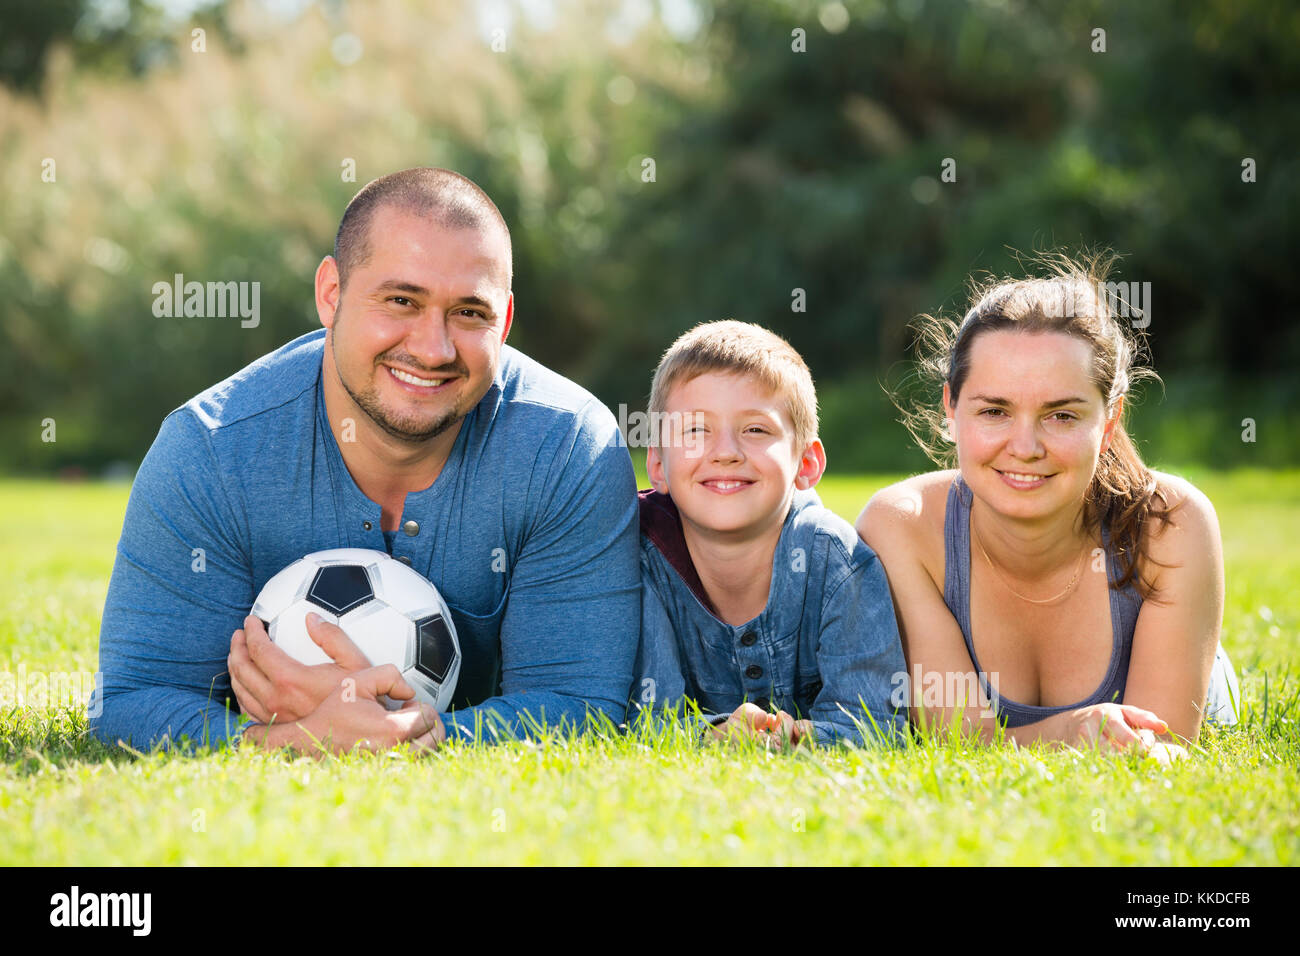 Fröhlich lächelnd, Mutter, Vater und Teenager Sohn im Gras mit Fußball liegen Stockfoto